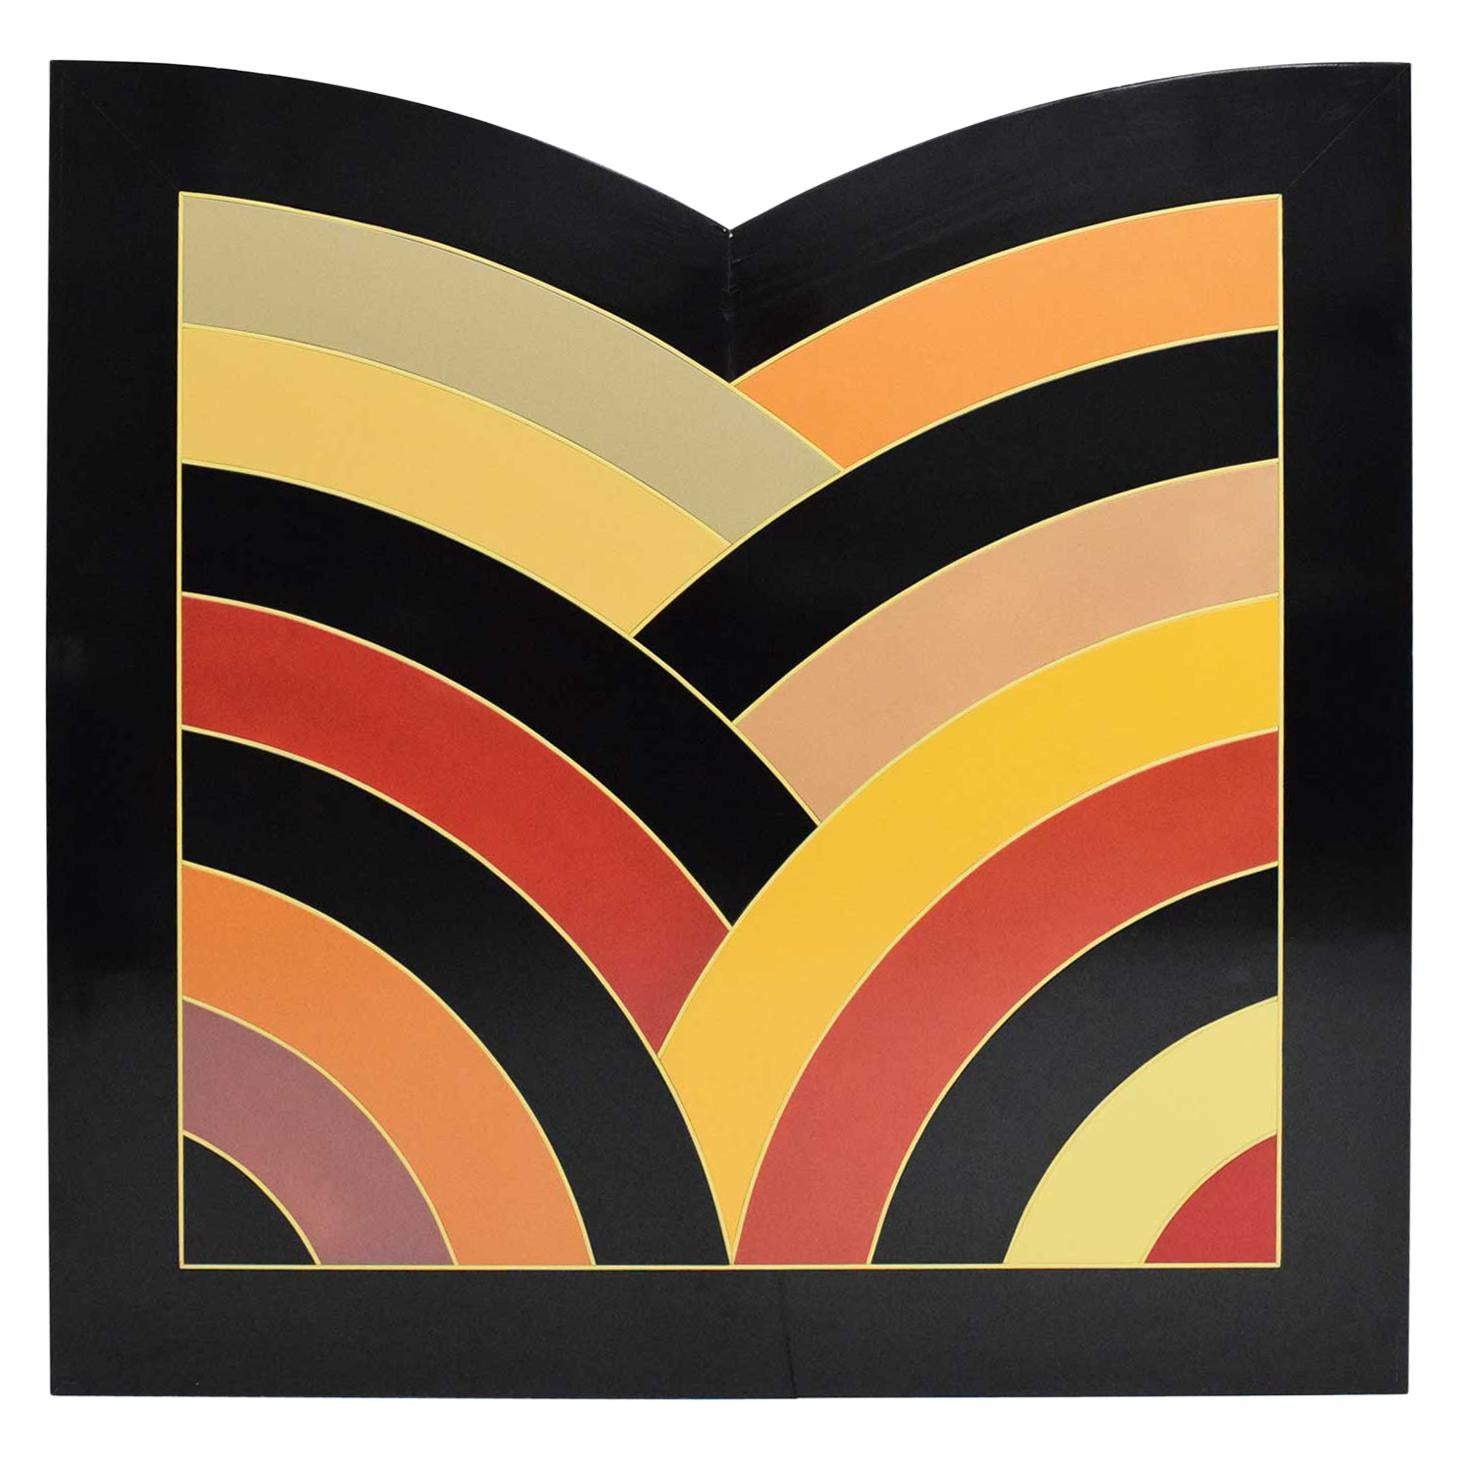 Großes Gemälde auf Karton im Stil des preisgekrönten MOMA-Logos von Frank Stella